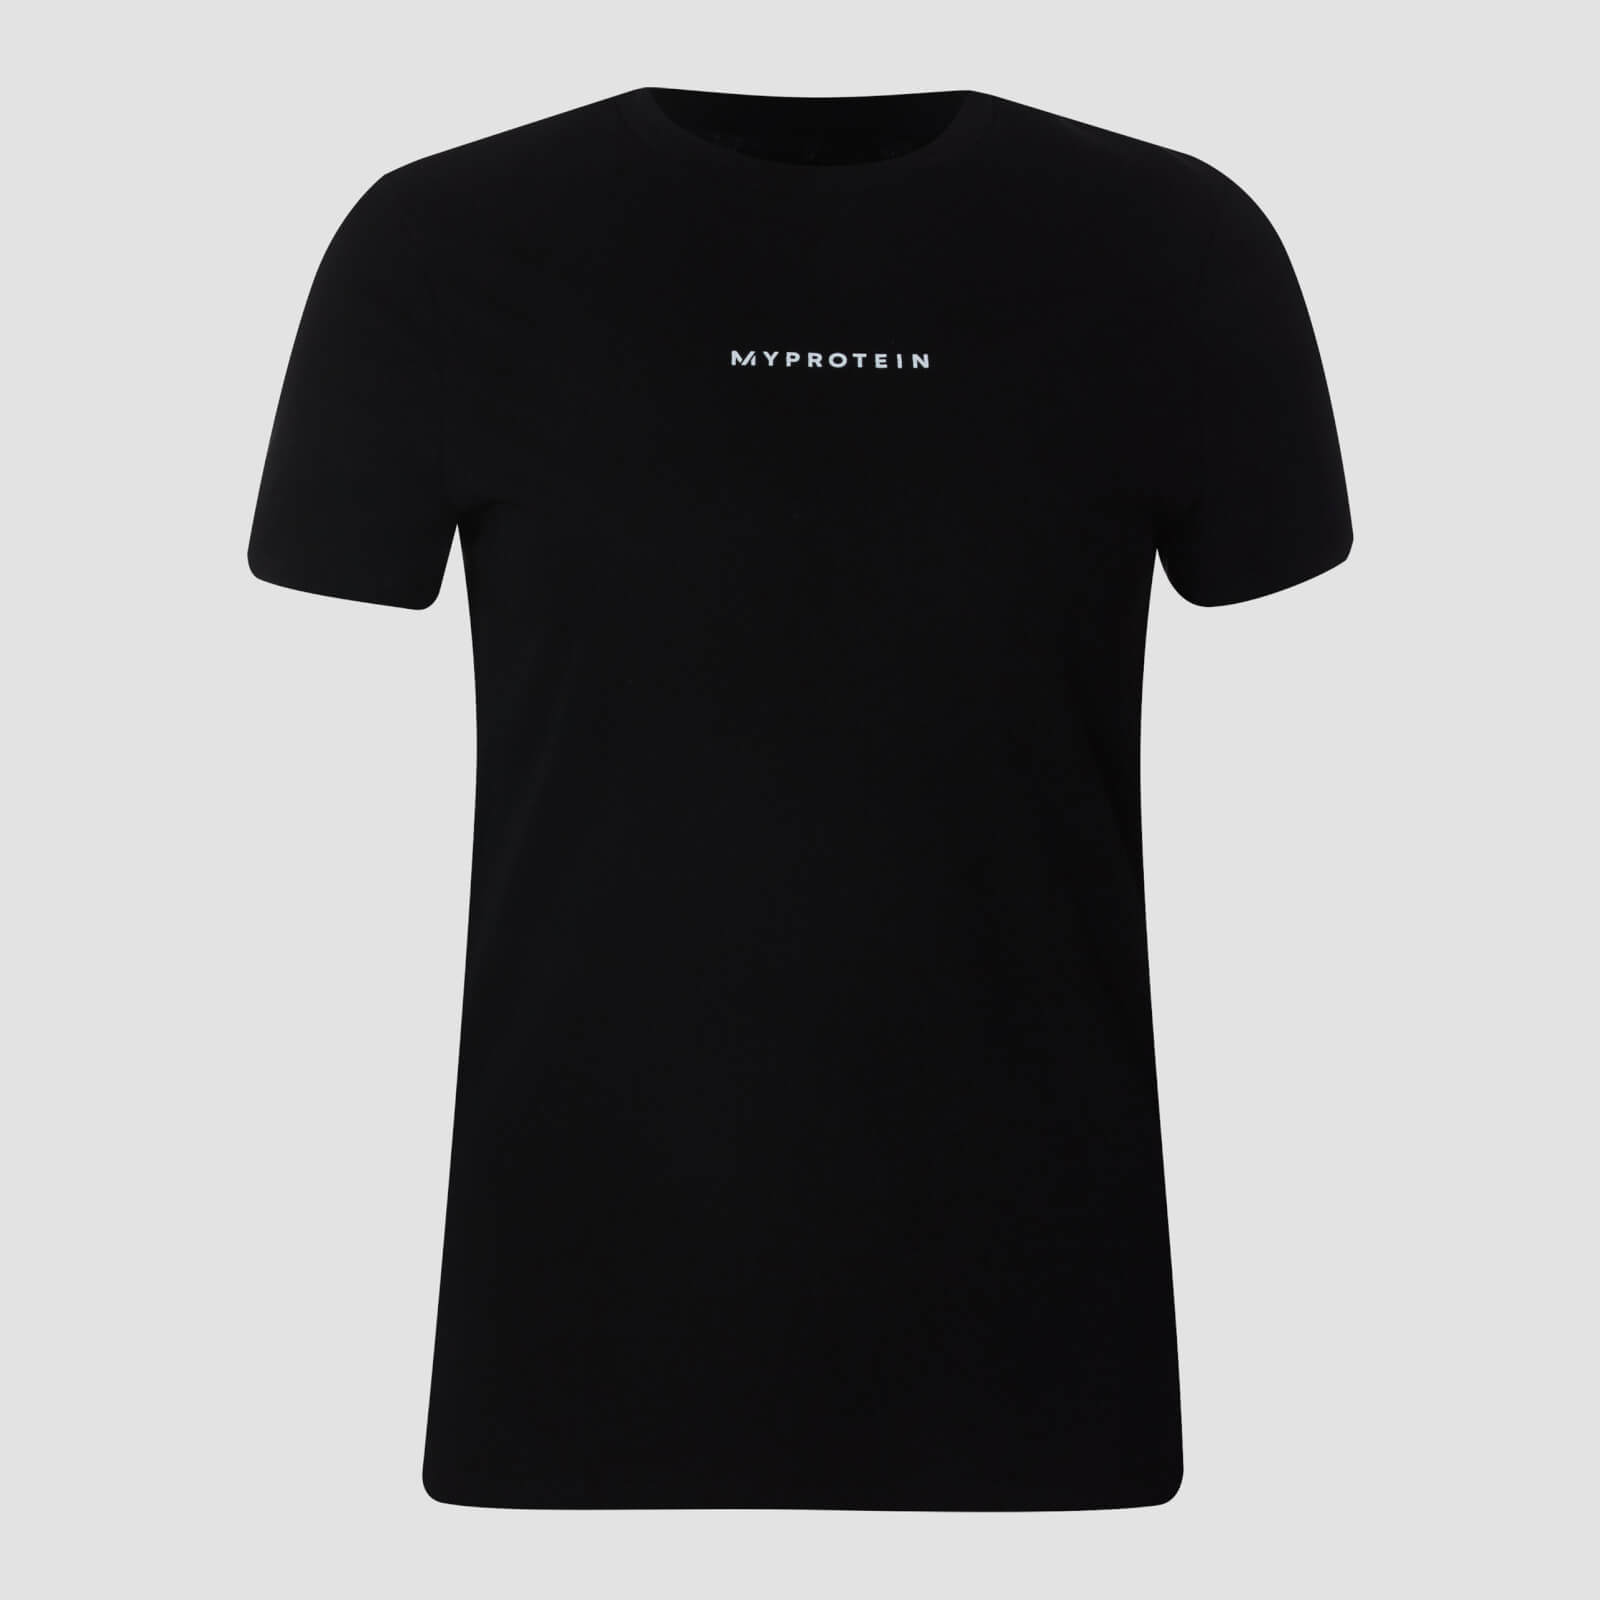 Myprotein T-shirt New Originals Contemporary da donna - Nero - XS